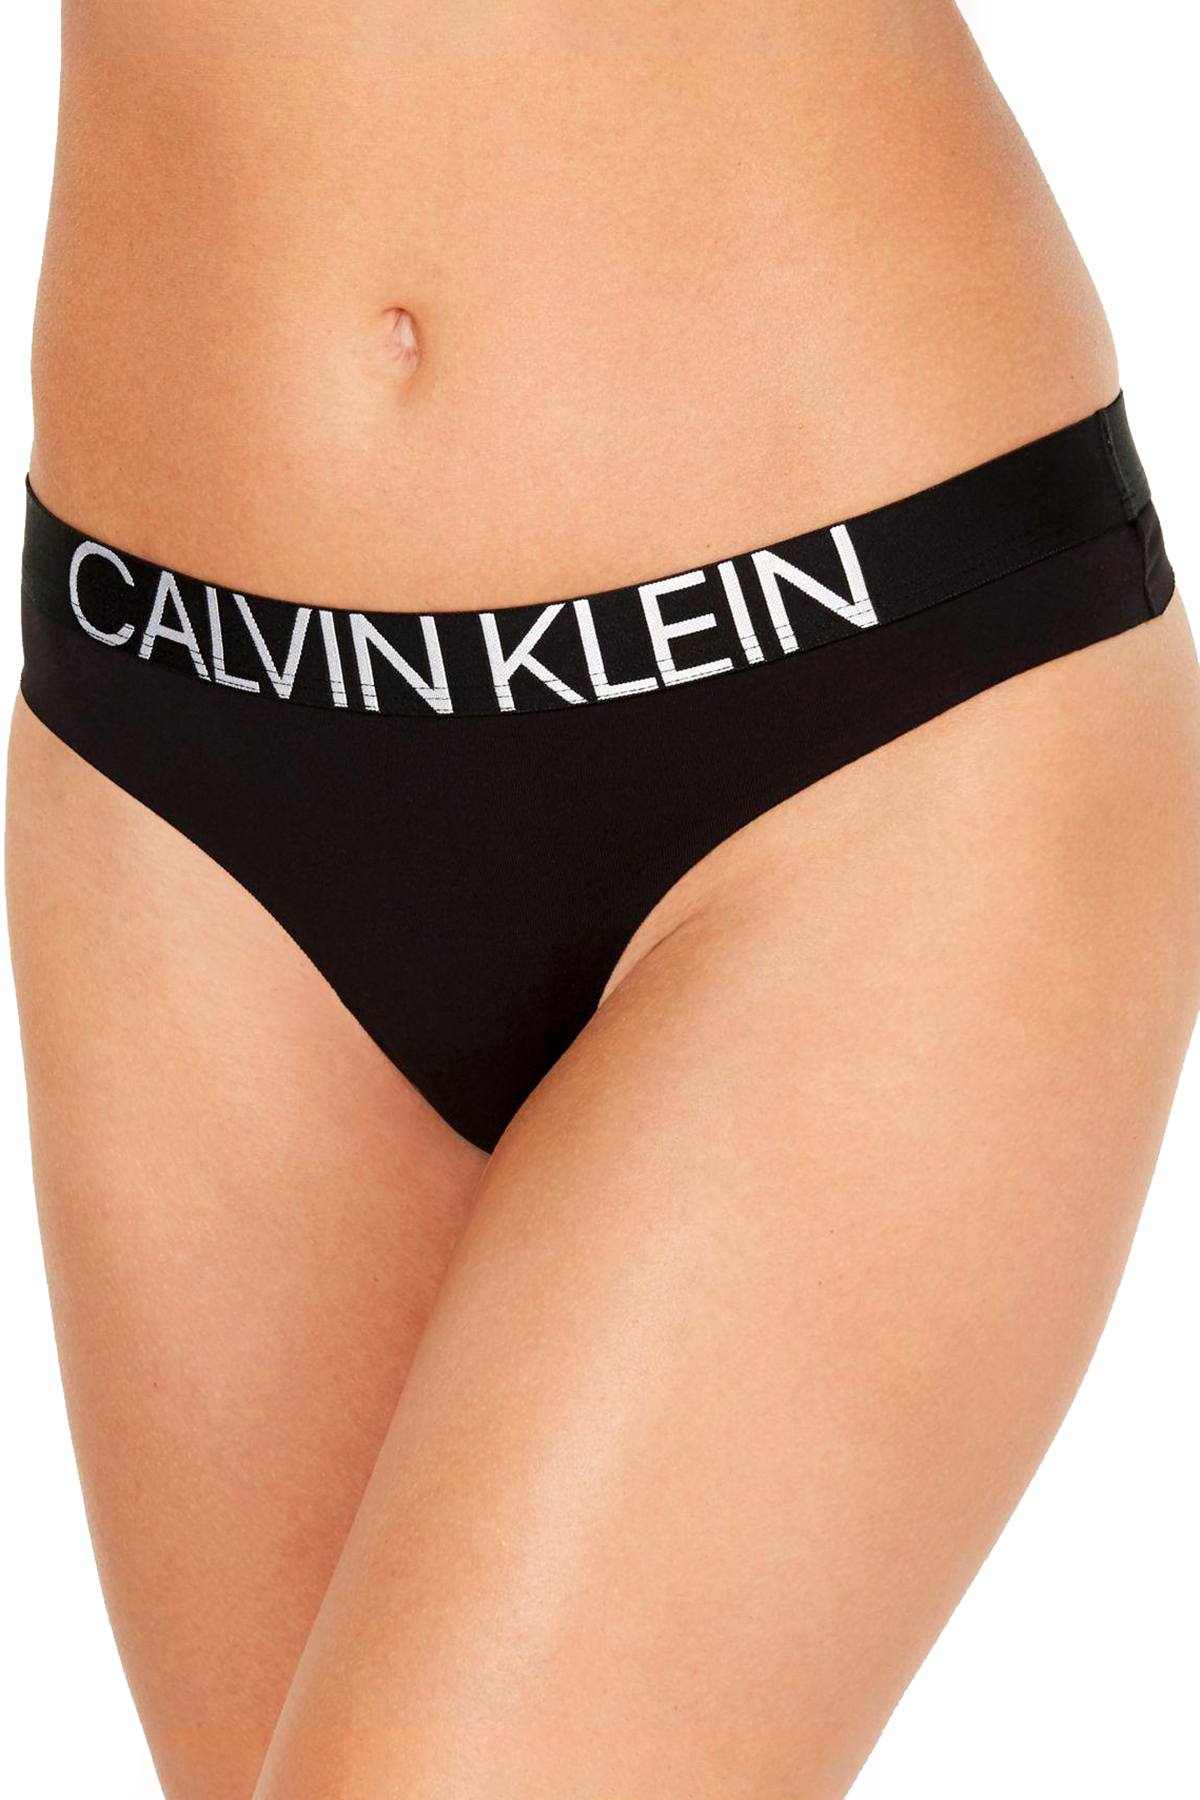 Calvin Klein Black Statement 1981 Logo Thong